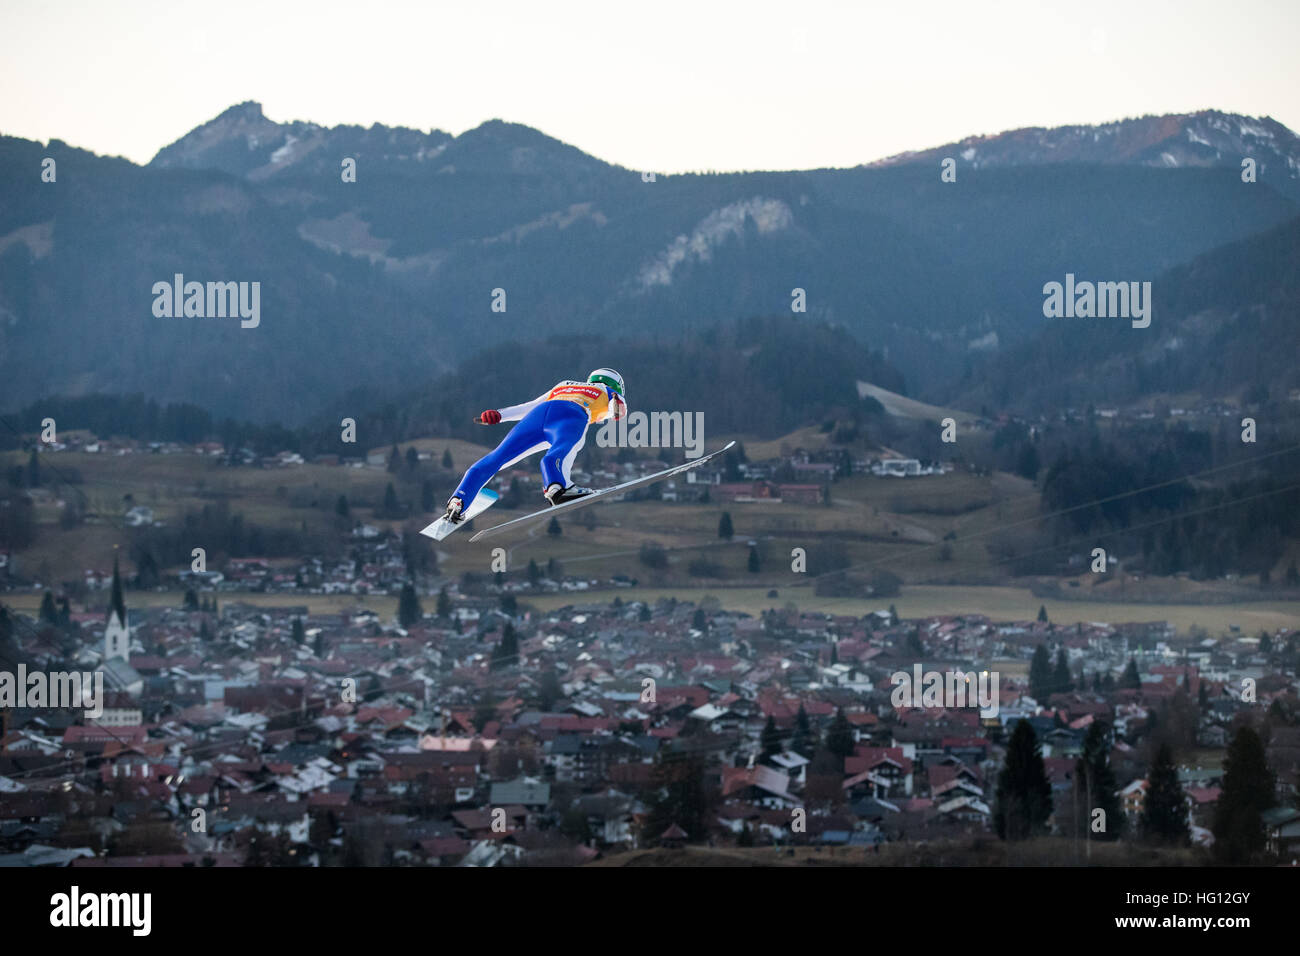 29.12.2017. Oberstdorf, Alemania. Puente de esquí esloveno Domen Prevc en acción durante una práctica saltar para las cuatro colinas Torneo en Oberstdorf, Alemania, el 29 de diciembre de 2016. Foto de stock